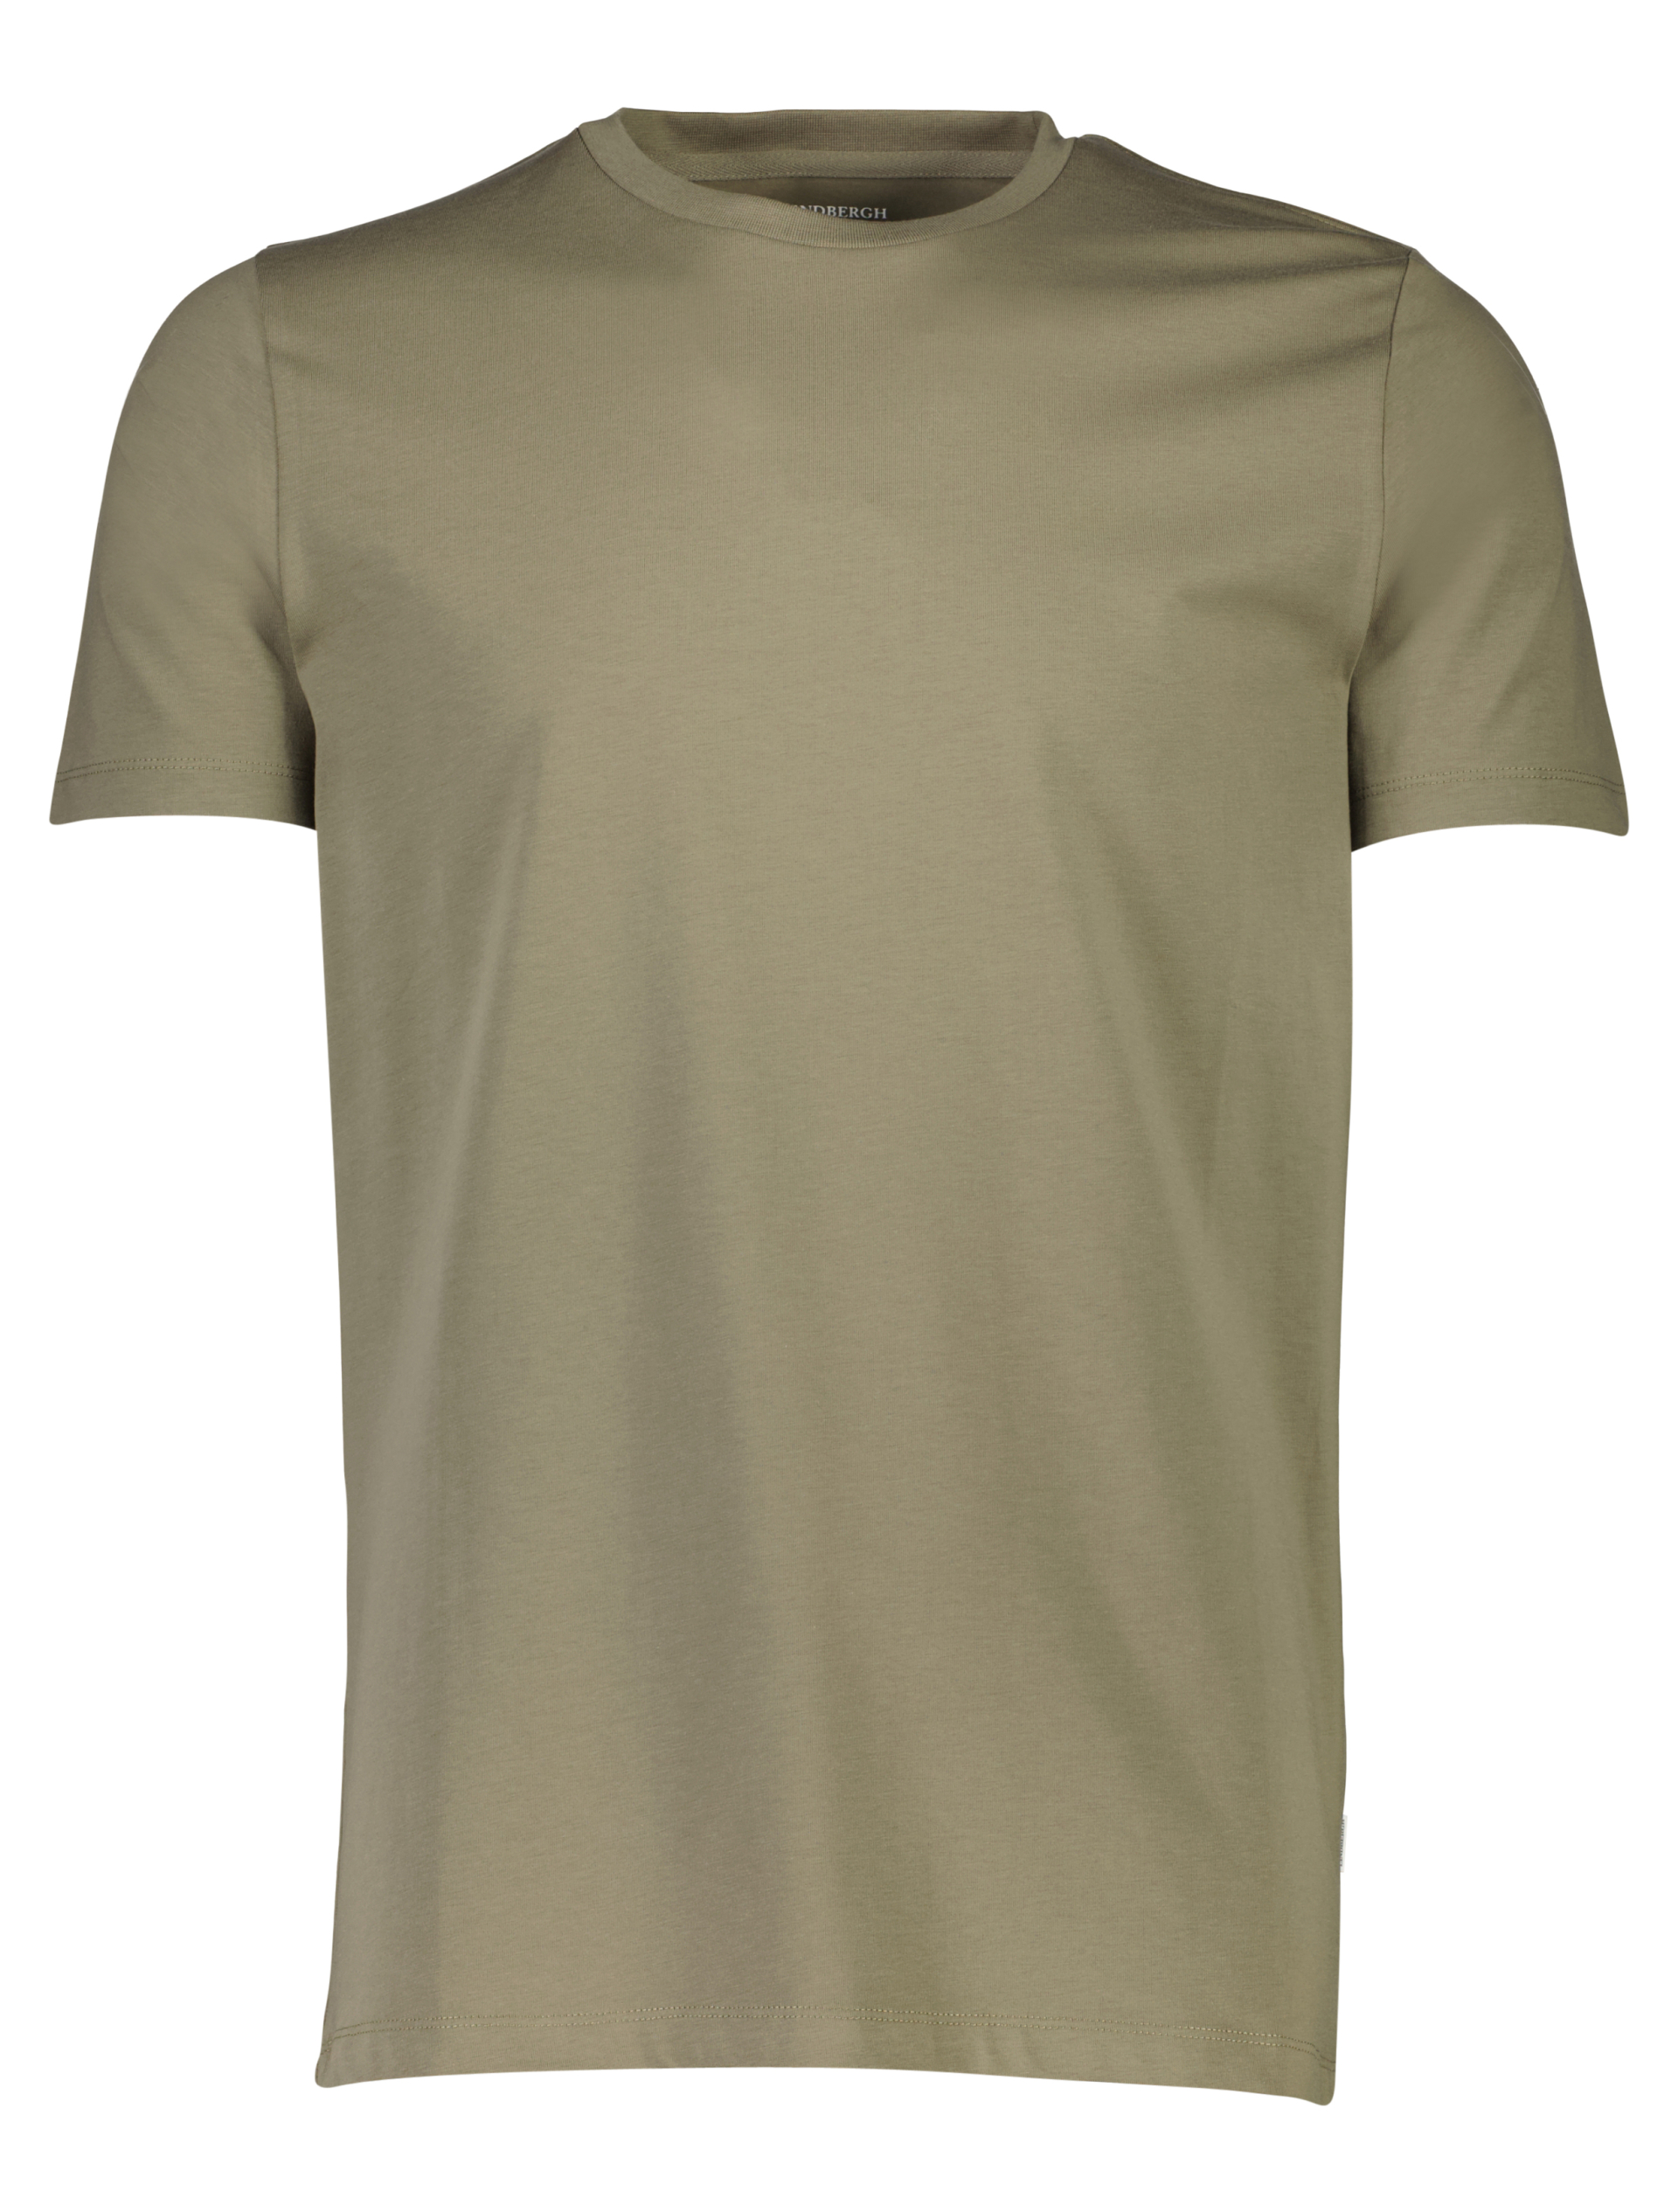 Lindbergh T-shirt grøn / lt army